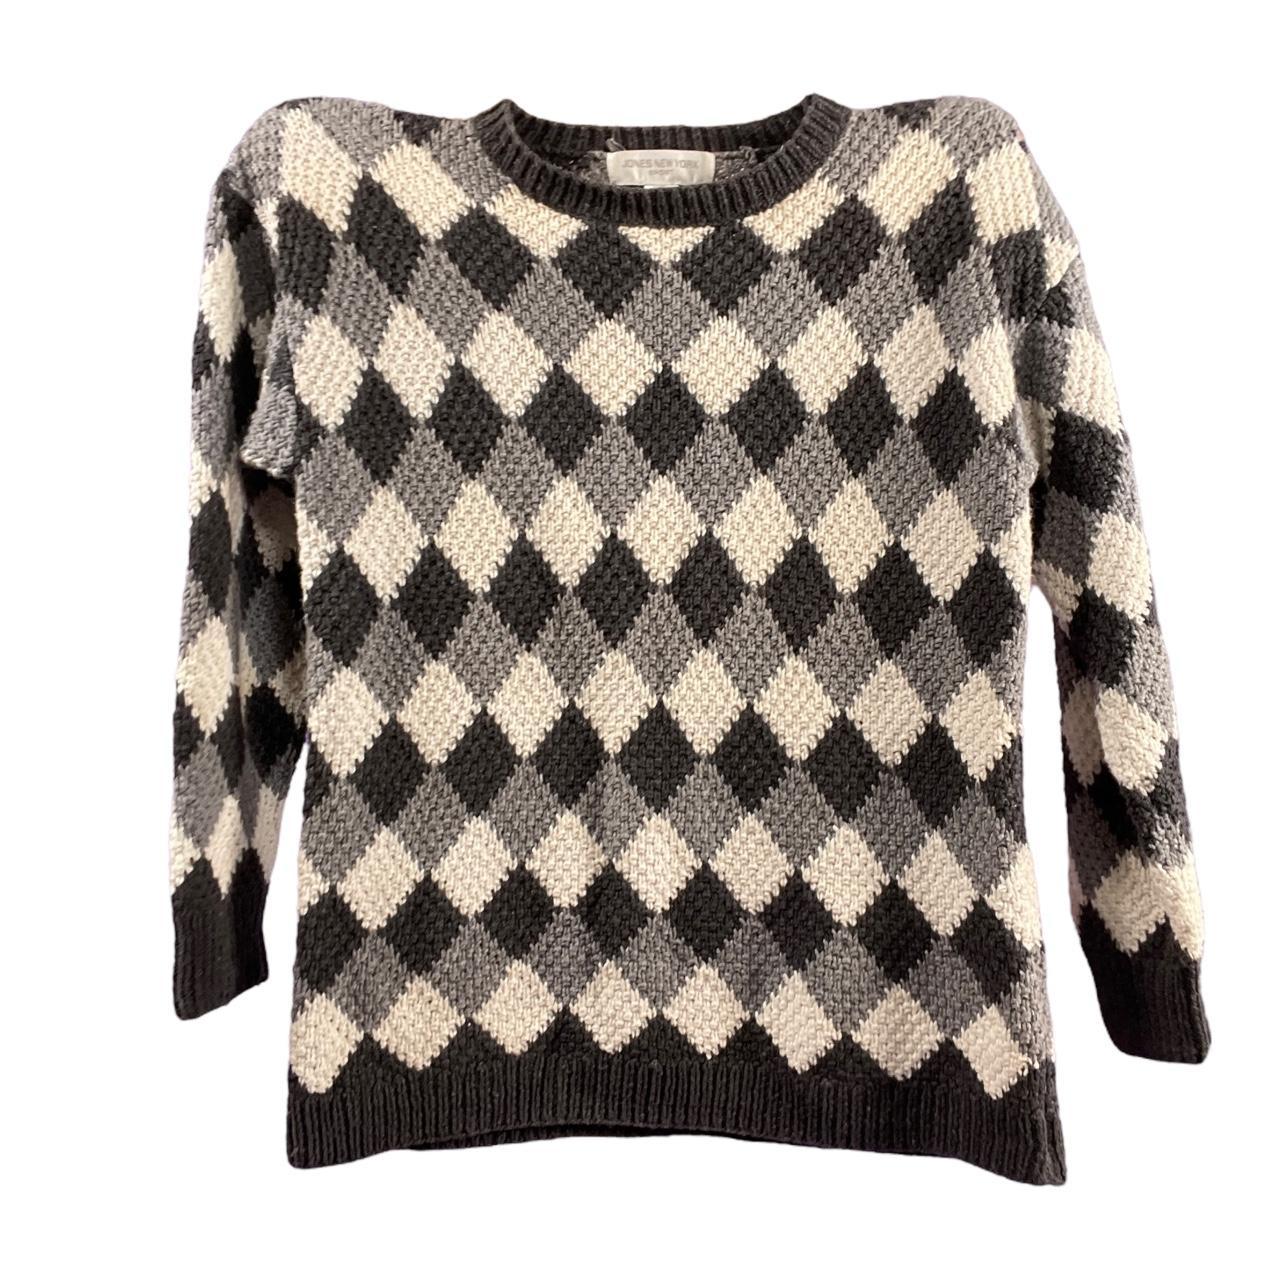 90s grunge argyle chunky knit sweater vintage 90s... - Depop